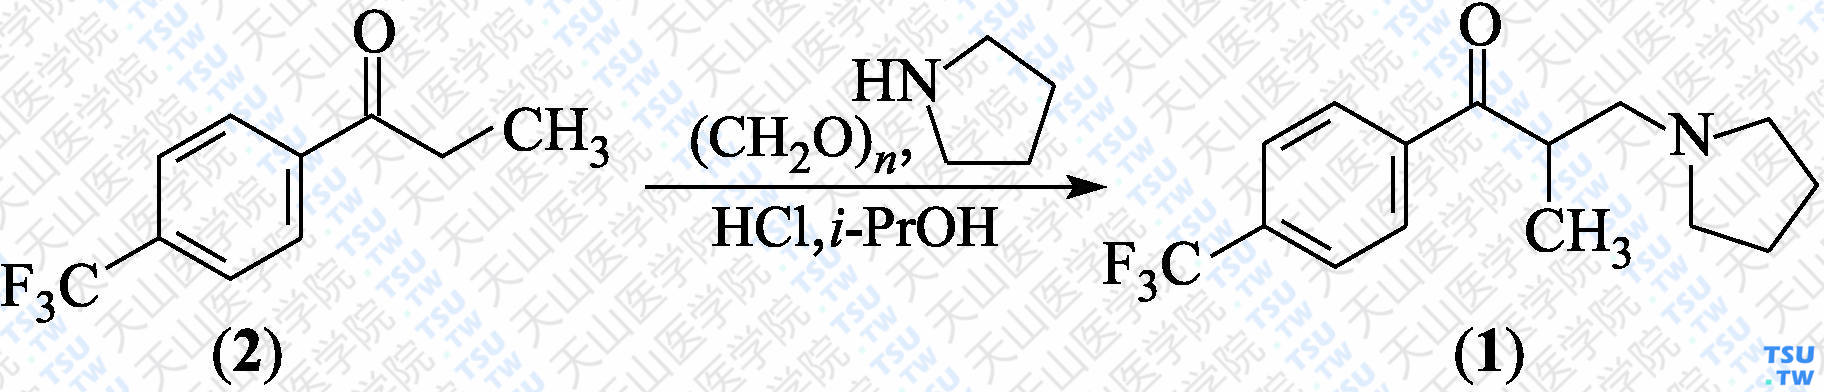 2-甲基-3-（1-吡咯烷基）-1-[4-（三氟甲基）苯基]丙酮（分子式：C<sub>15</sub>H<sub>18</sub>F<sub>3</sub>NO）的合成方法路线及其结构式